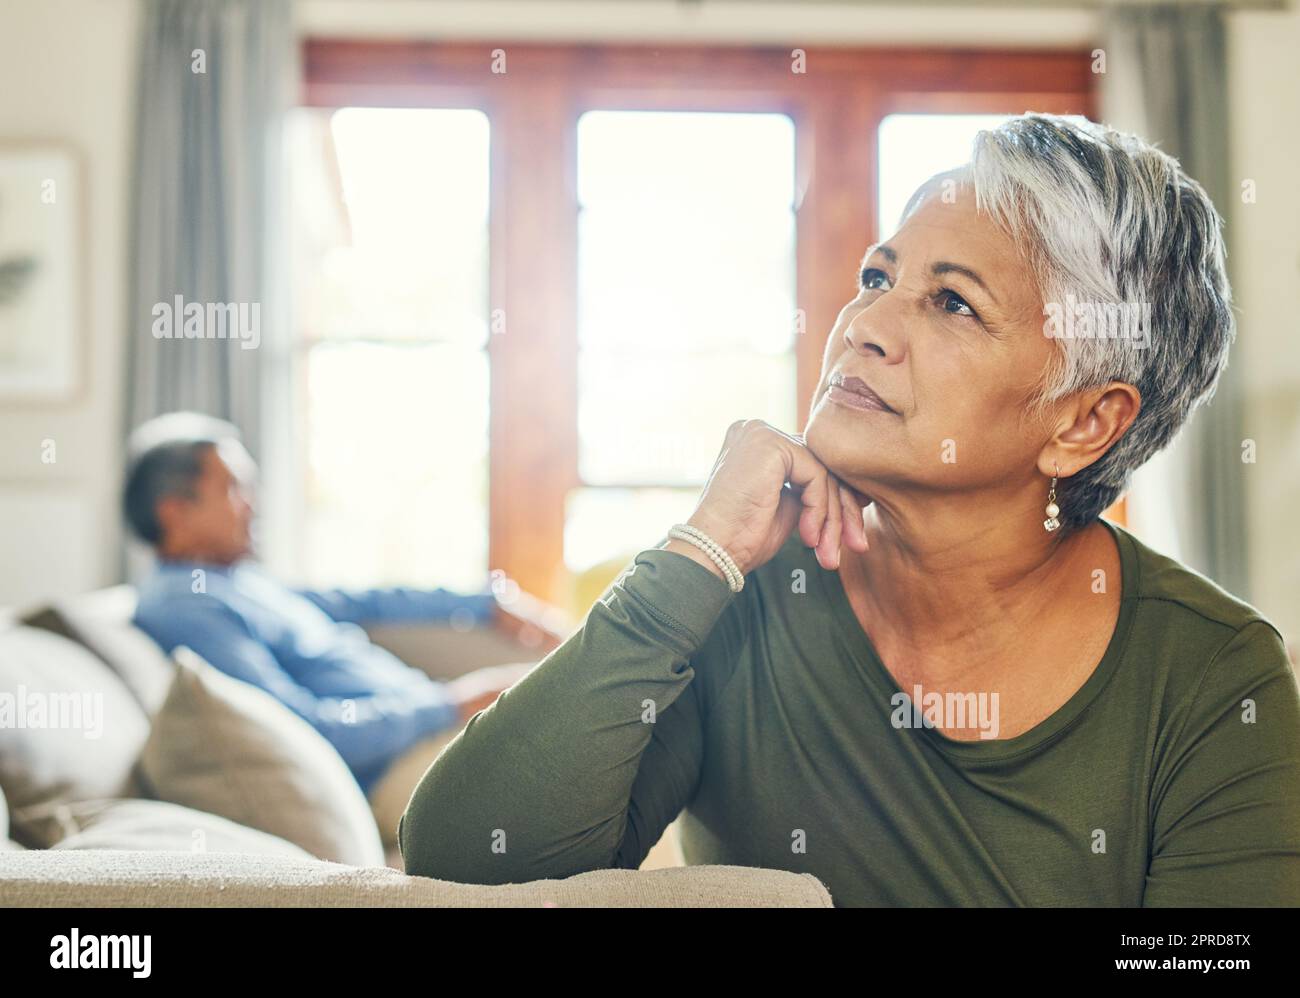 Er hat heute kein einziges Wort von mir bekommen. Eine wunderschöne Seniorin, die auf einer Couch sitzt und im Hintergrund mit ihrem Mann sehr aufmerksam aussieht. Stockfoto